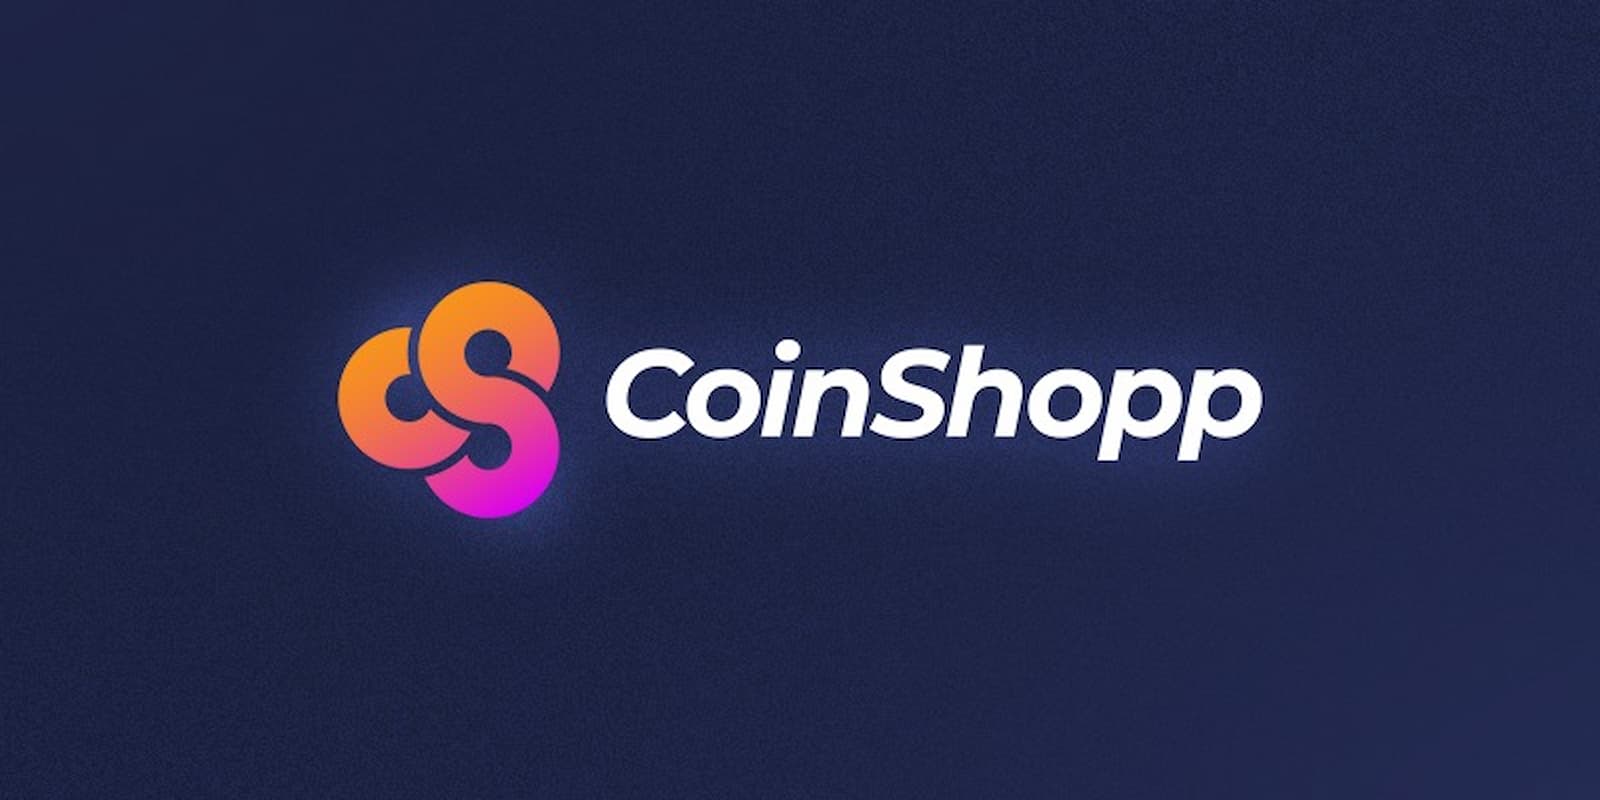 CoinShopp cria plataforma para inovar em e-commerce e tokenização